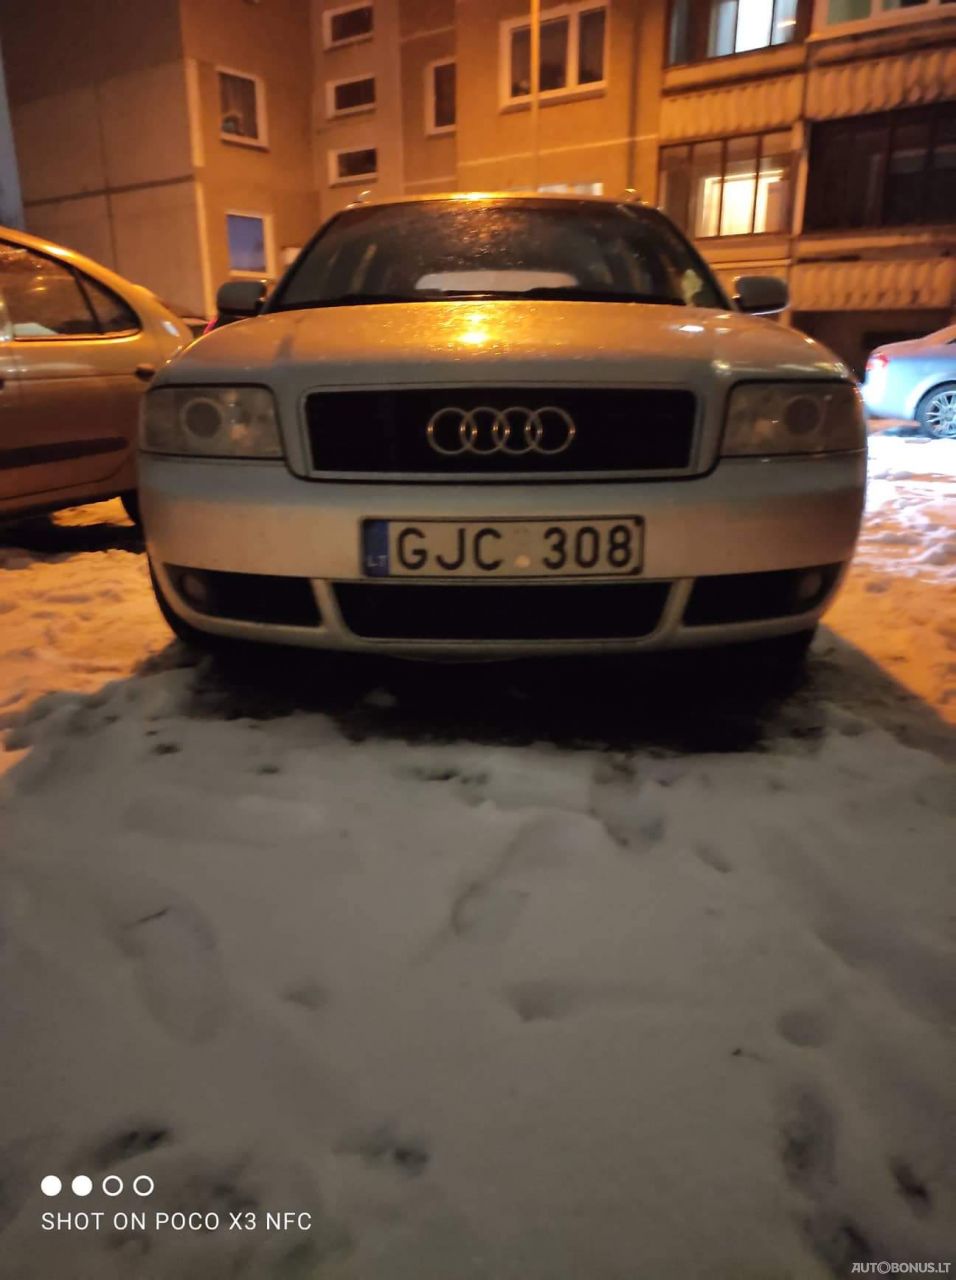 Audi A6, 2.5 l., universalas